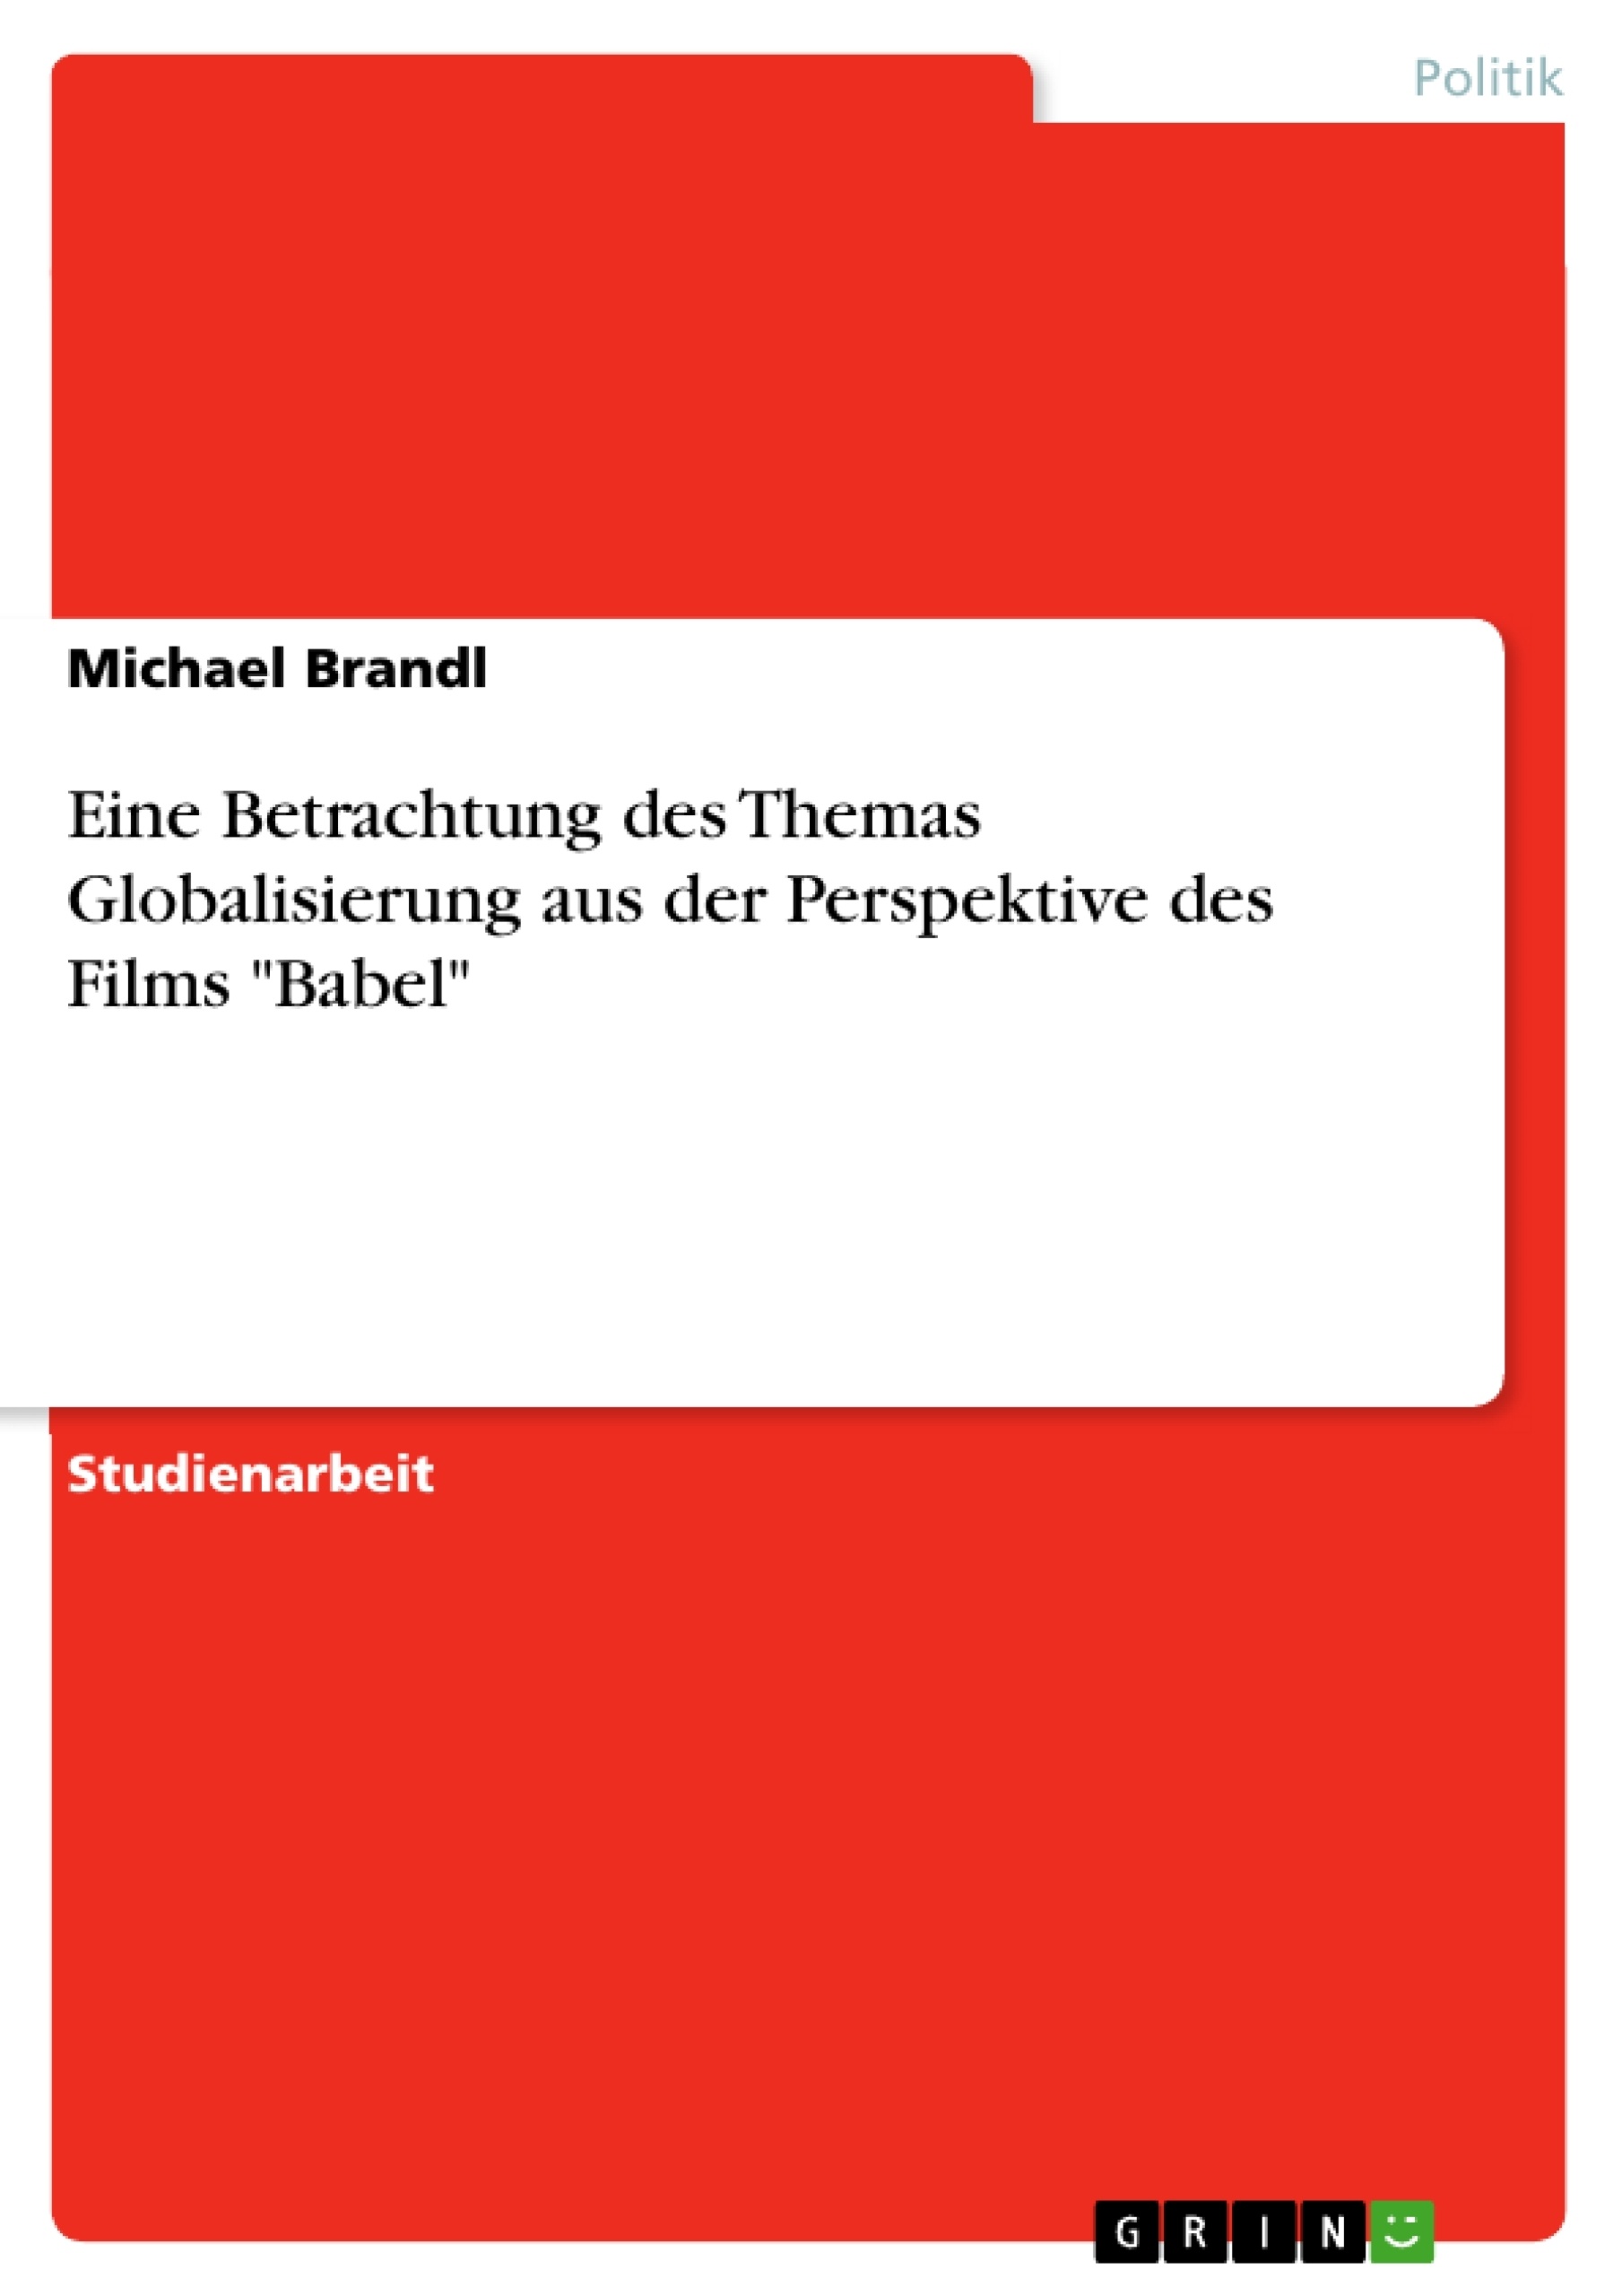 Title: Eine Betrachtung des Themas Globalisierung aus der Perspektive des Films "Babel"